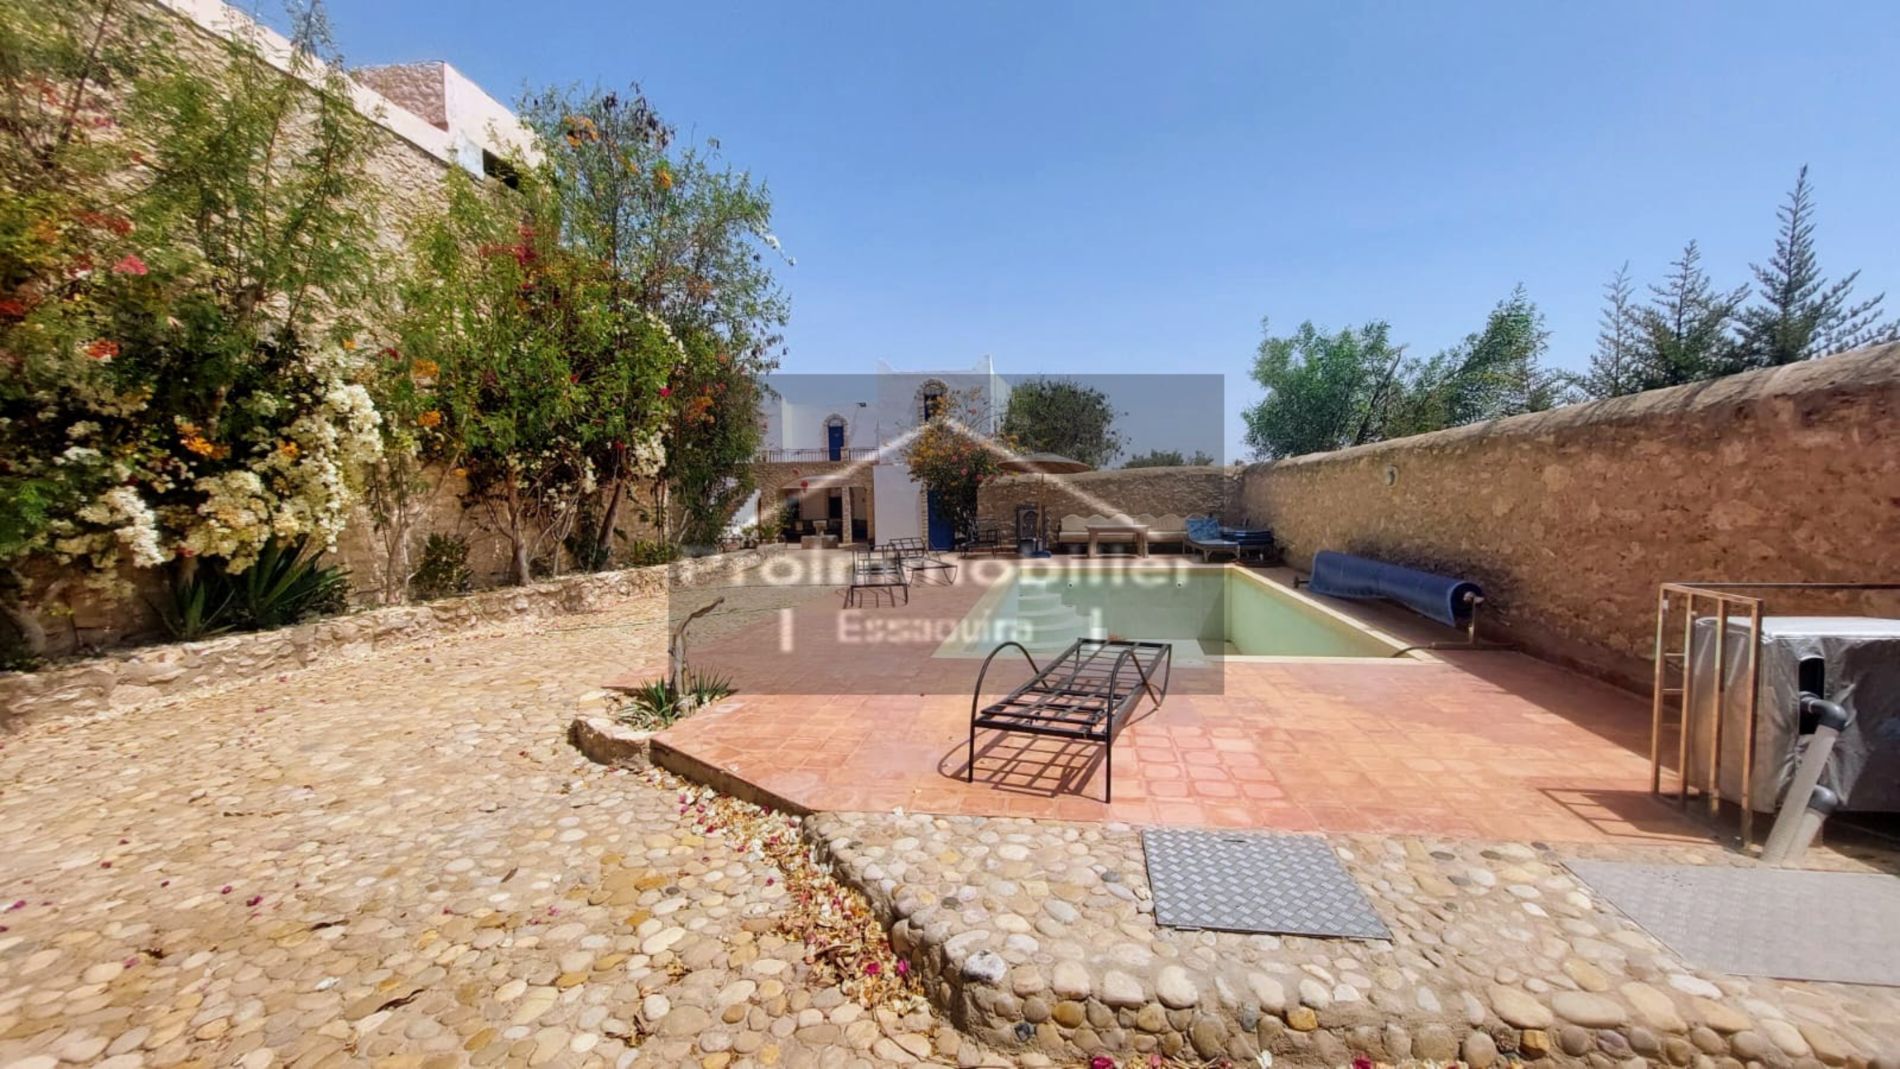 23-04-05-VM Rumah Cantik di kawasan luar bandar seluas 220 m² untuk dijual di Essaouira Land 600 m²